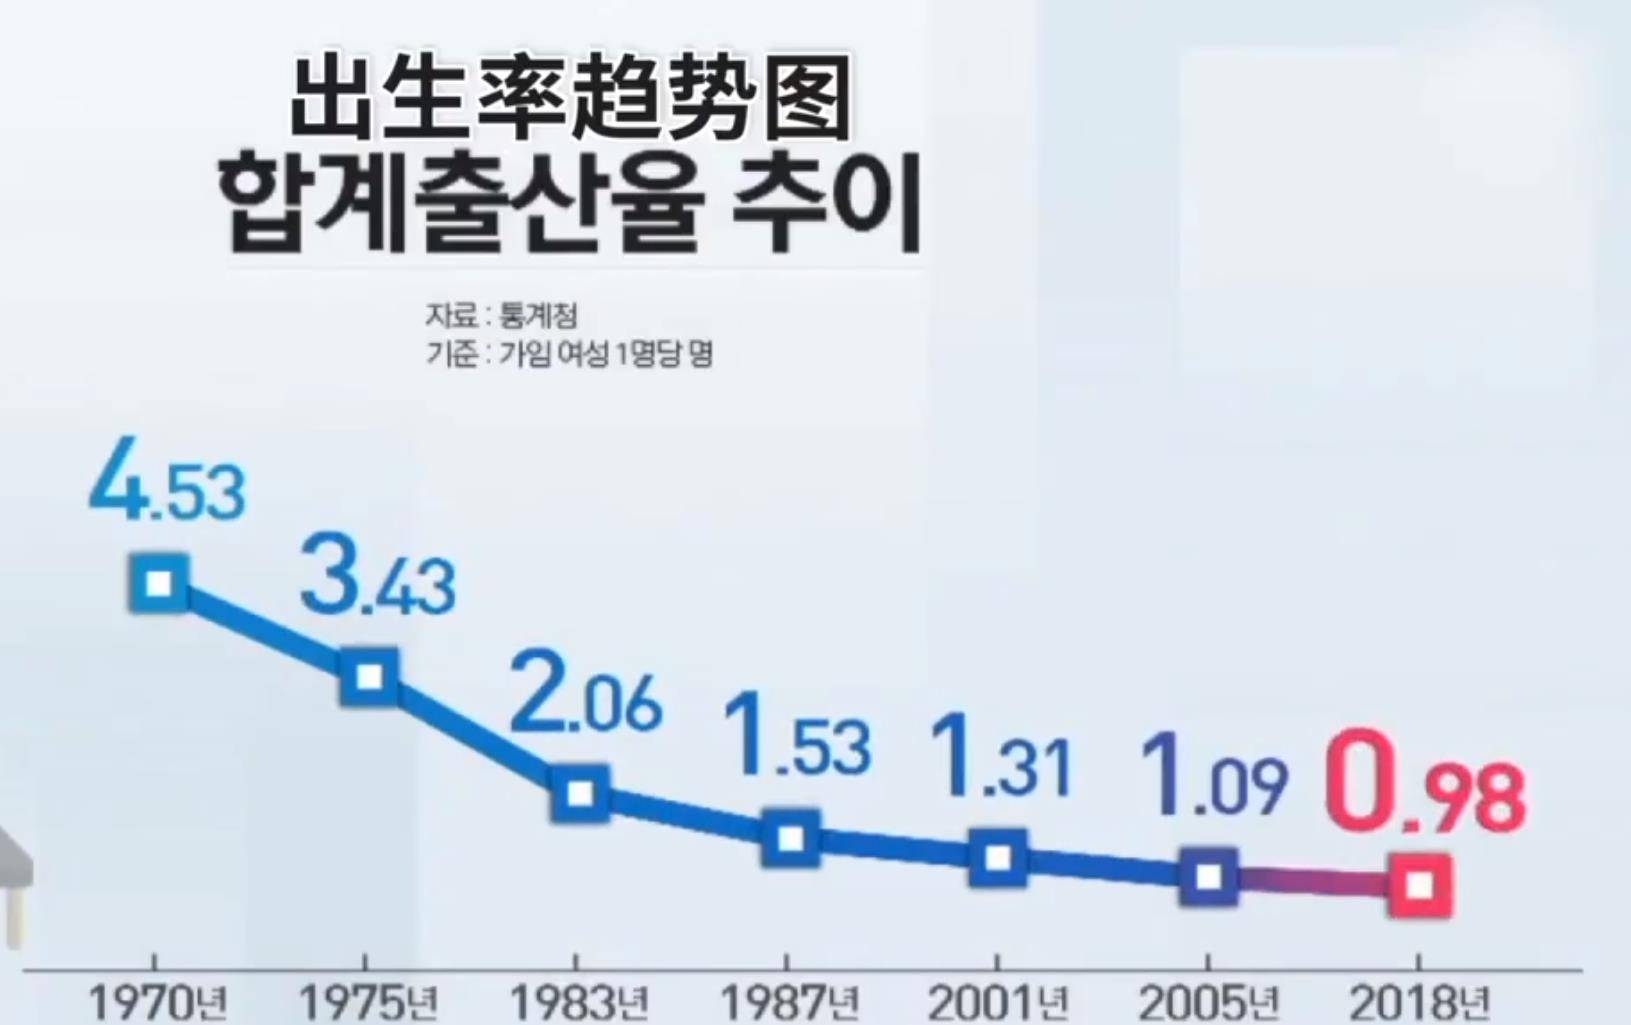 全球最低!出生率084, 12000亿元鼓励生育成泡影,韩国人口开始减少